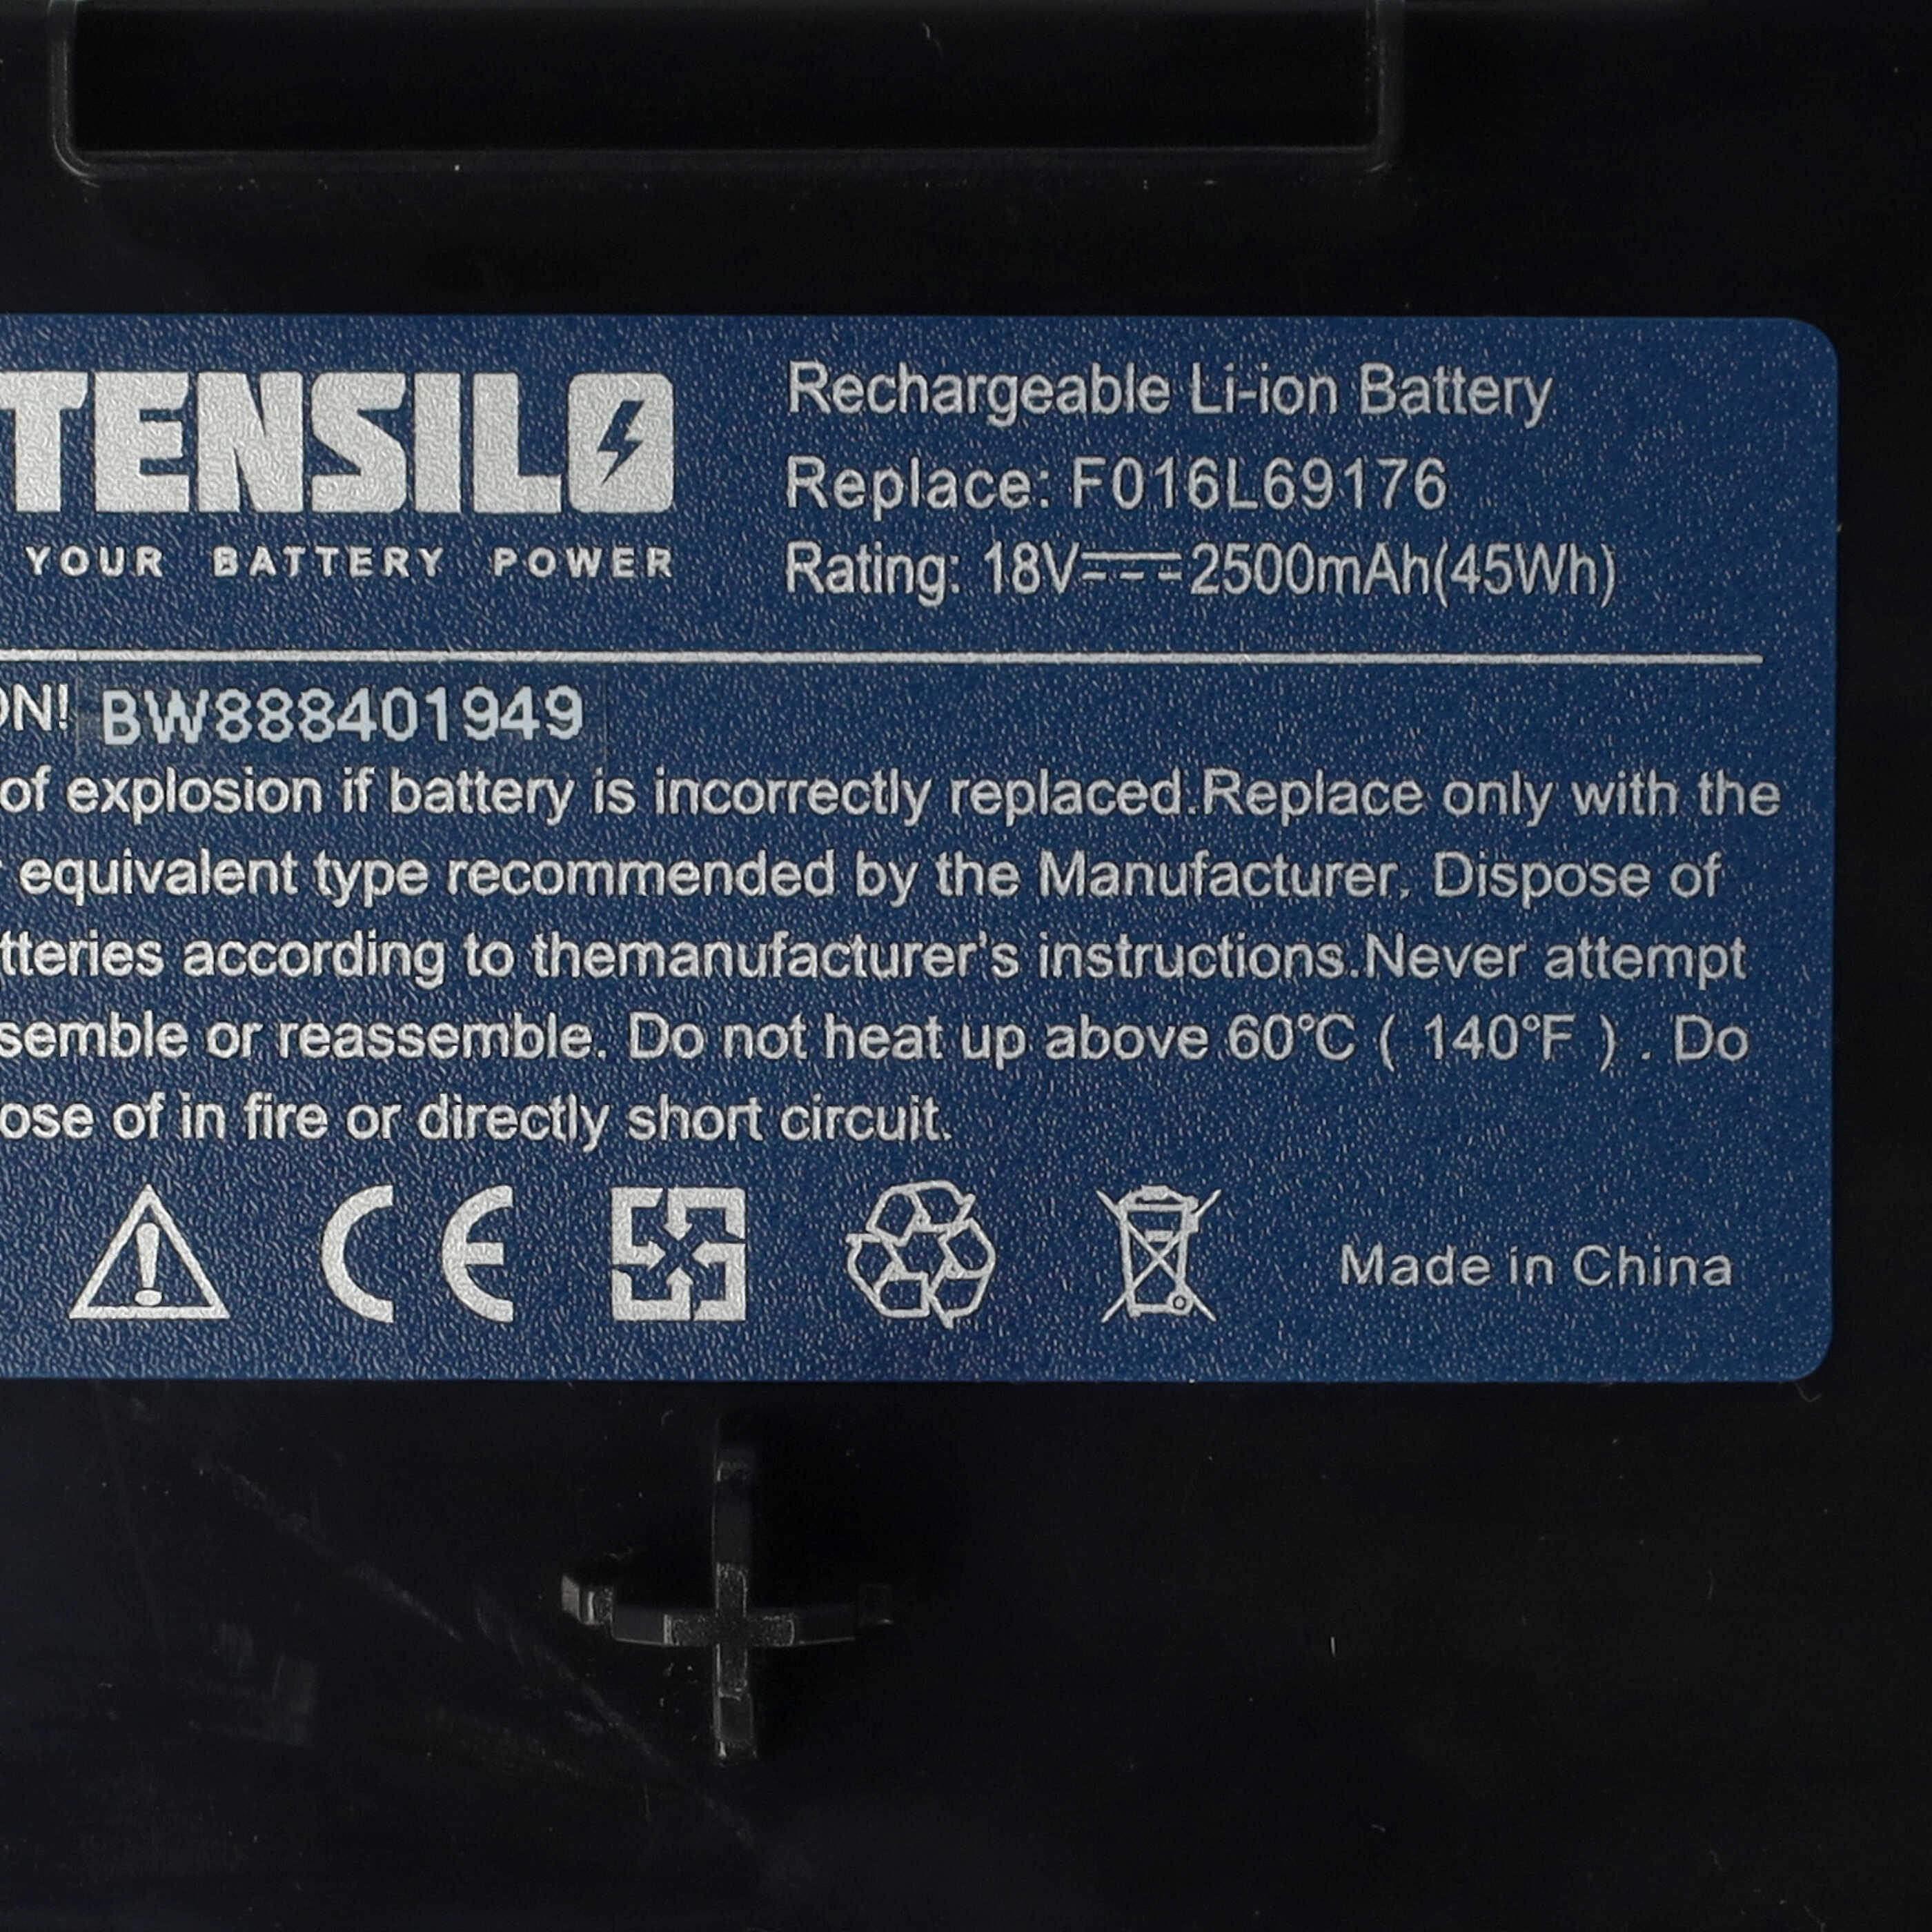 Batterie remplace Bosch F016L69176, F016104898, F 016 104 898 pour outil de jardinage - 2500mAh 18V Li-ion